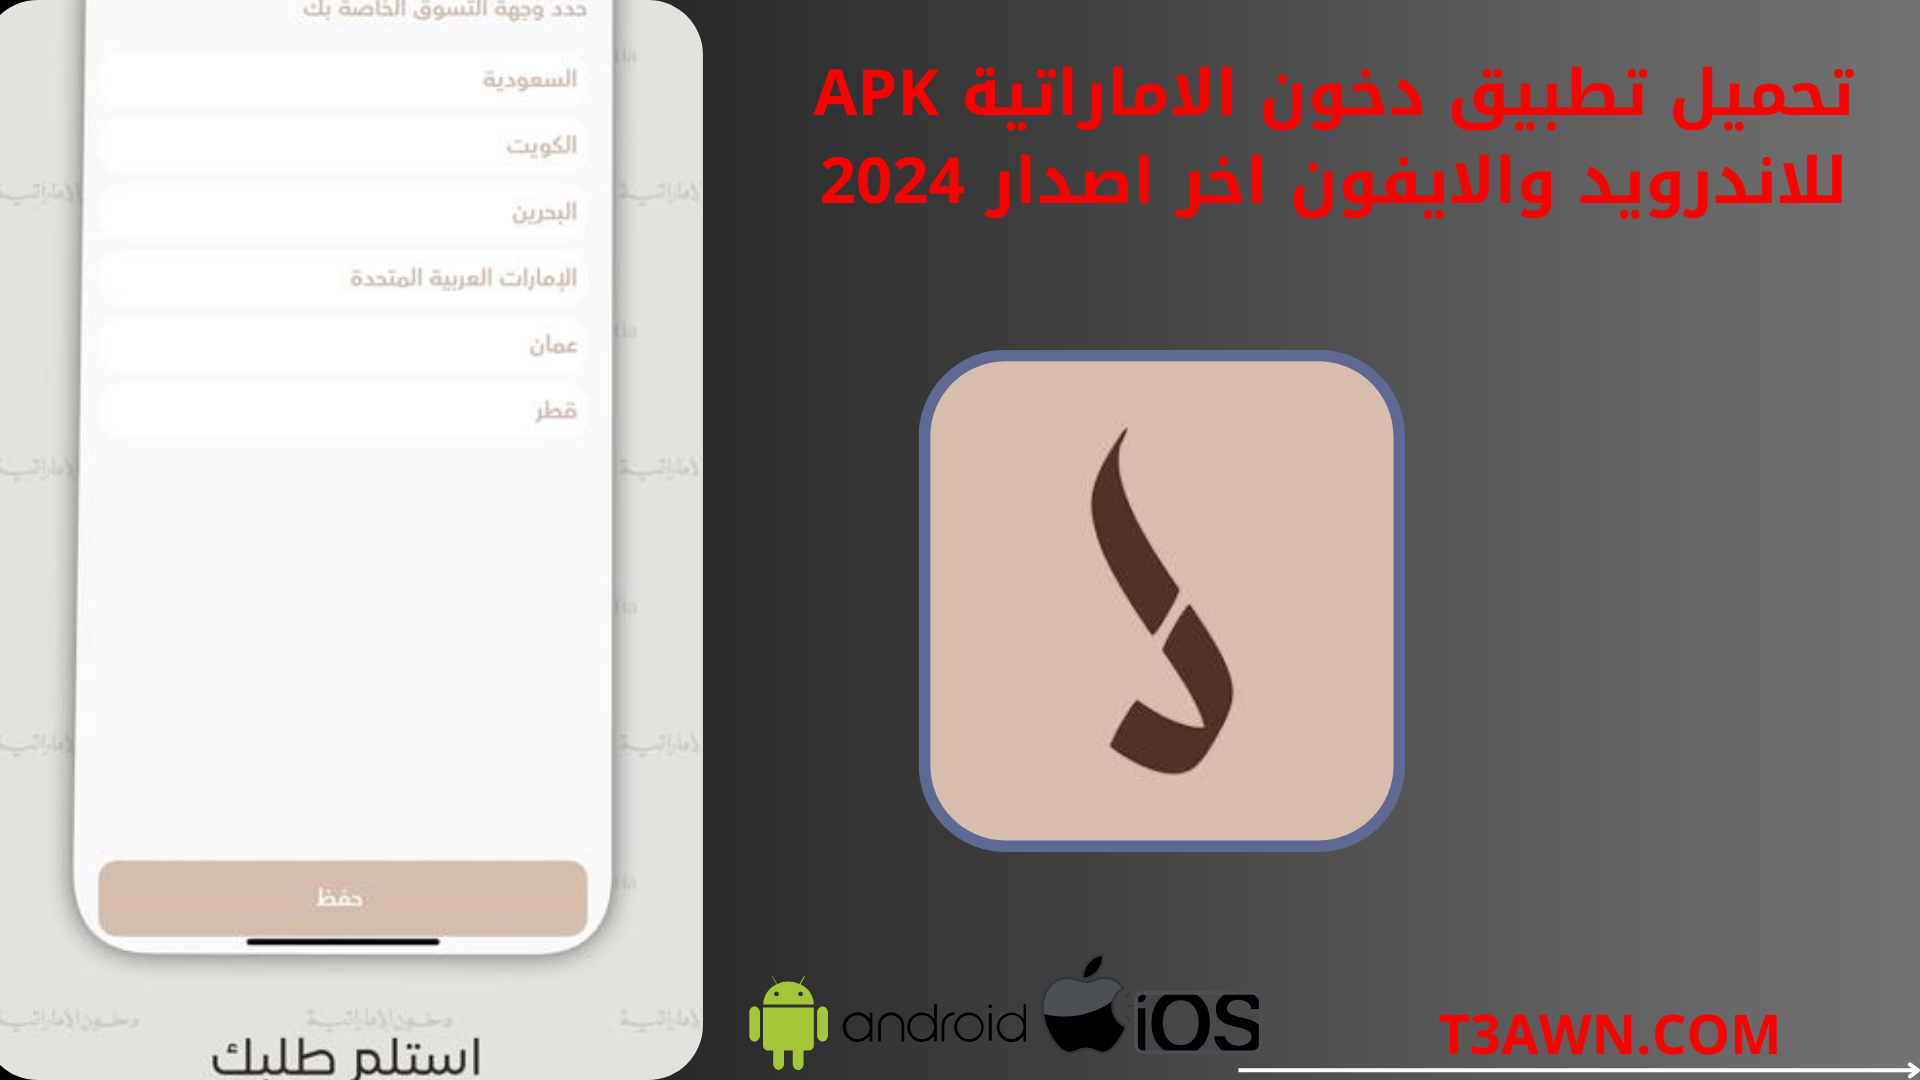 تحميل تطبيق دخون الاماراتية apk للاندرويد والايفون اخر اصدار 2024